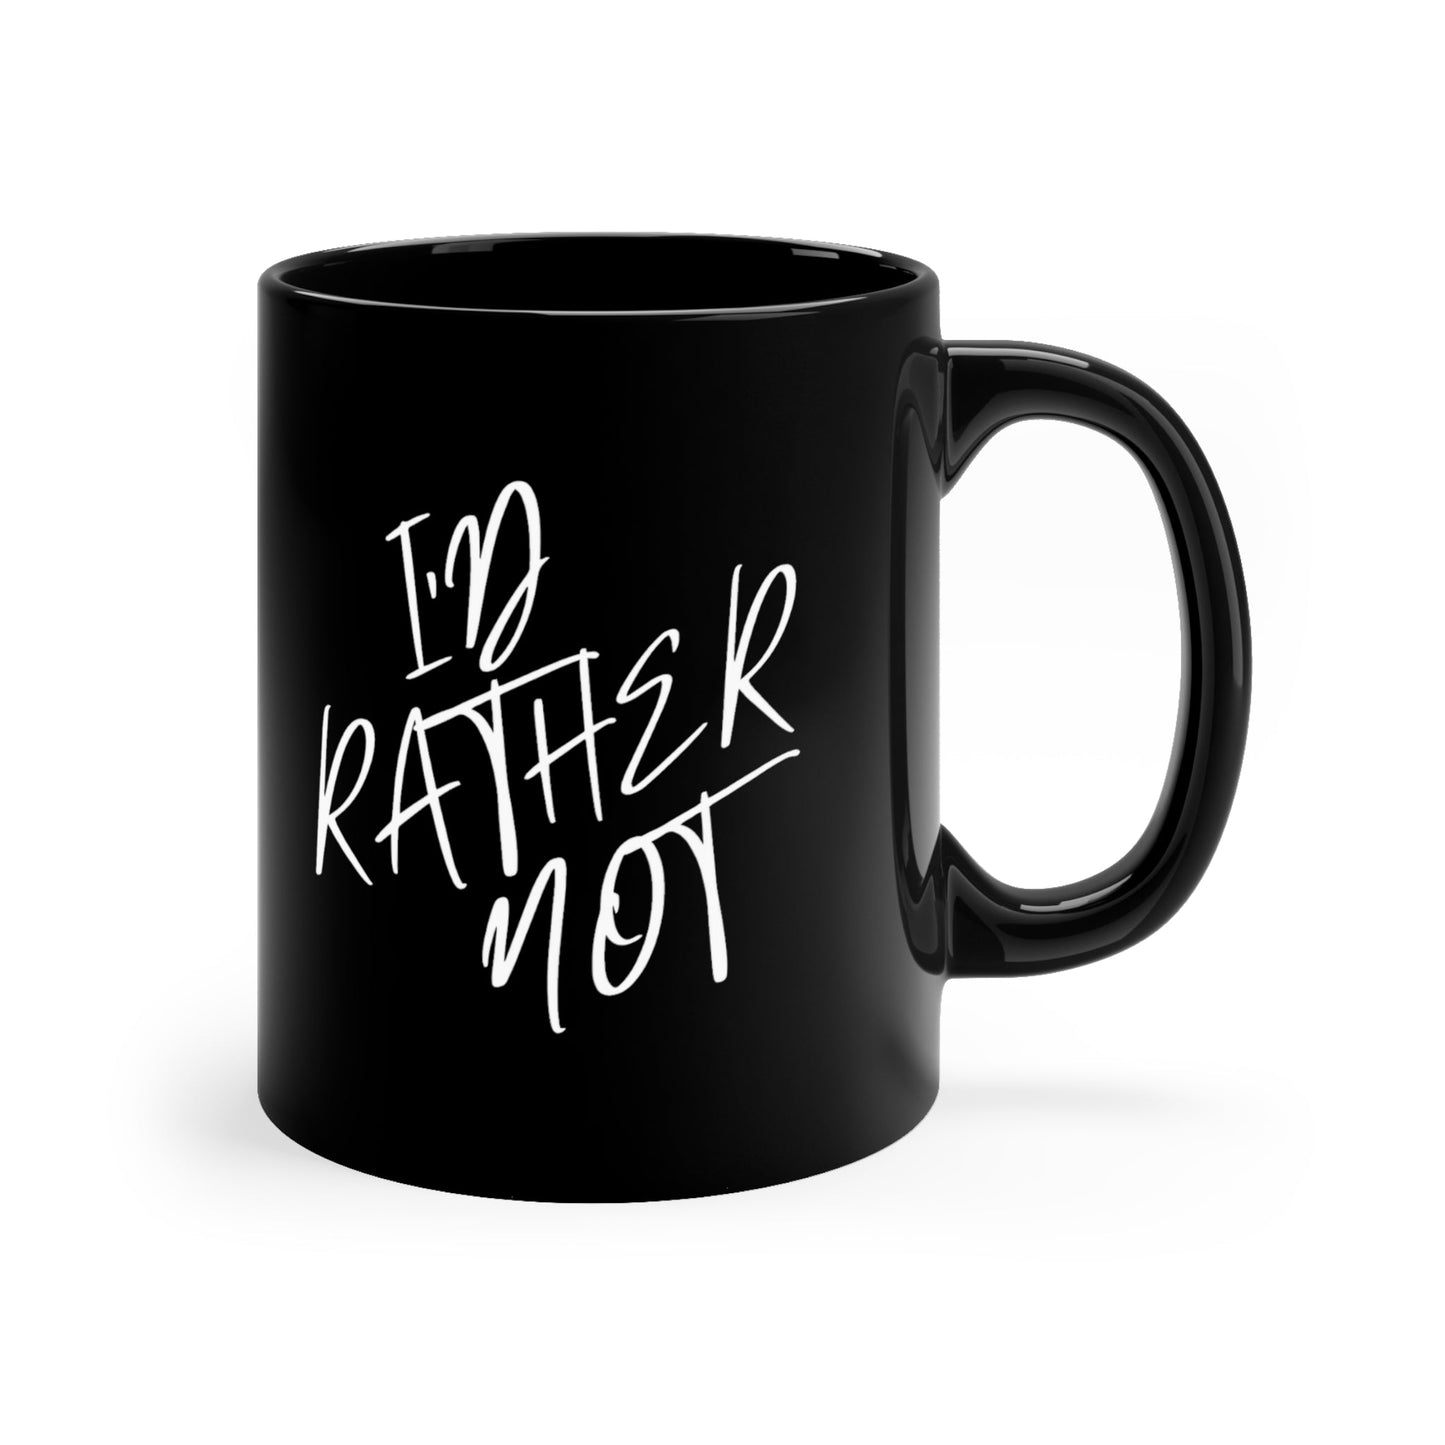 I’d Rather Not | 11oz Black Mug